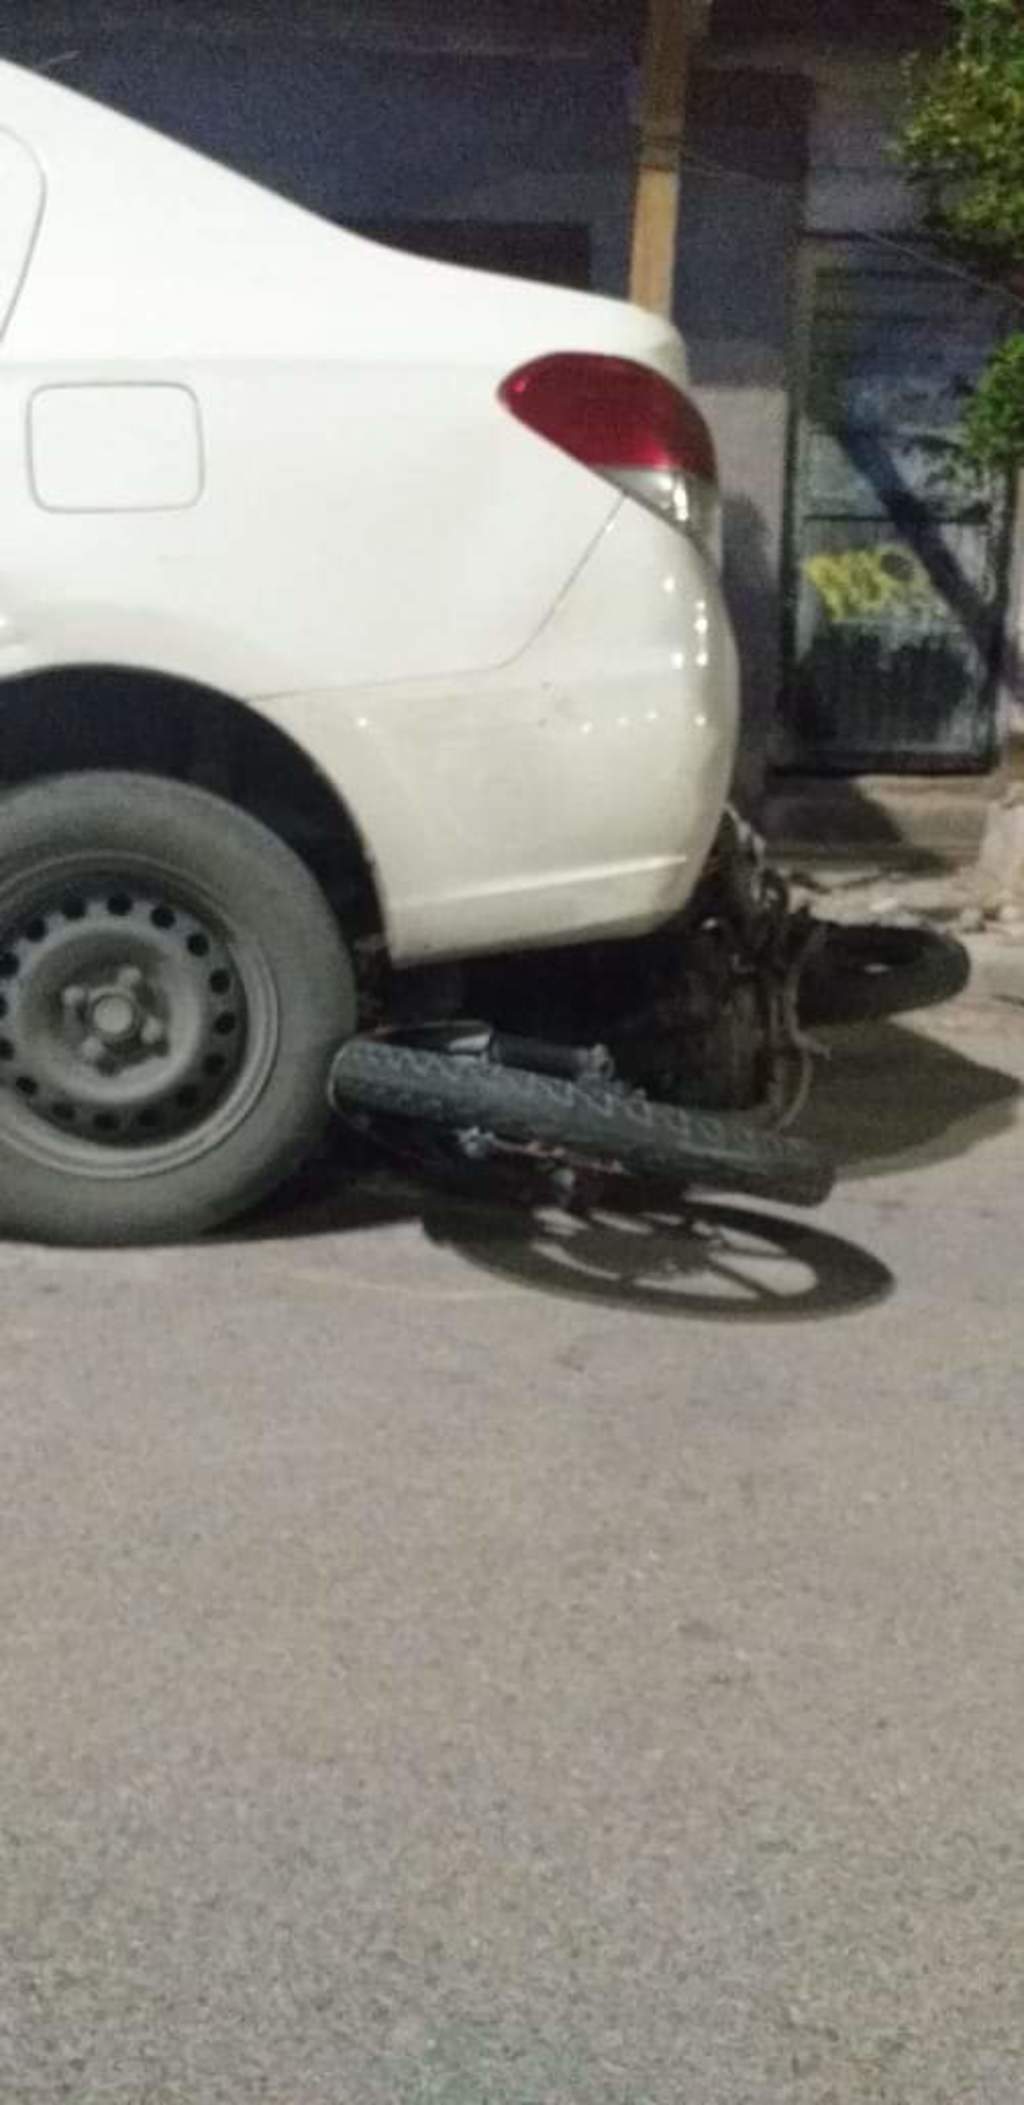 La motocicleta y el vehículo siniestrados fueron trasladados y depositados en el corralón municipal de Torreón. (EL SIGLO DE TORREÓN)